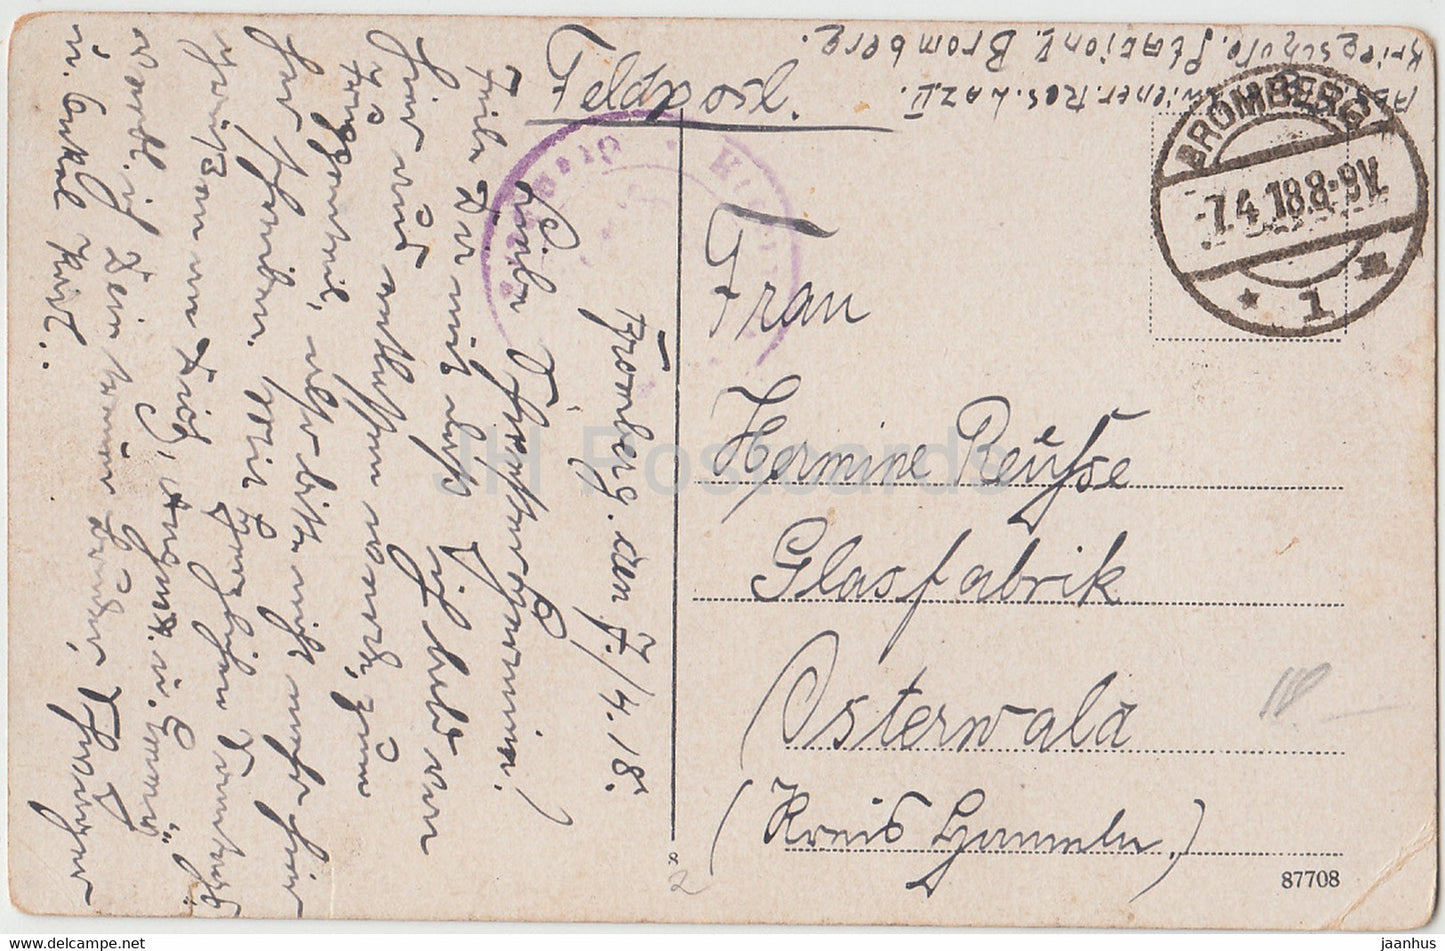 Bromberg - Bydgoszcz - Friedrichsplatz - Feldpost - alte Postkarte - 1918 - Polen - gebraucht